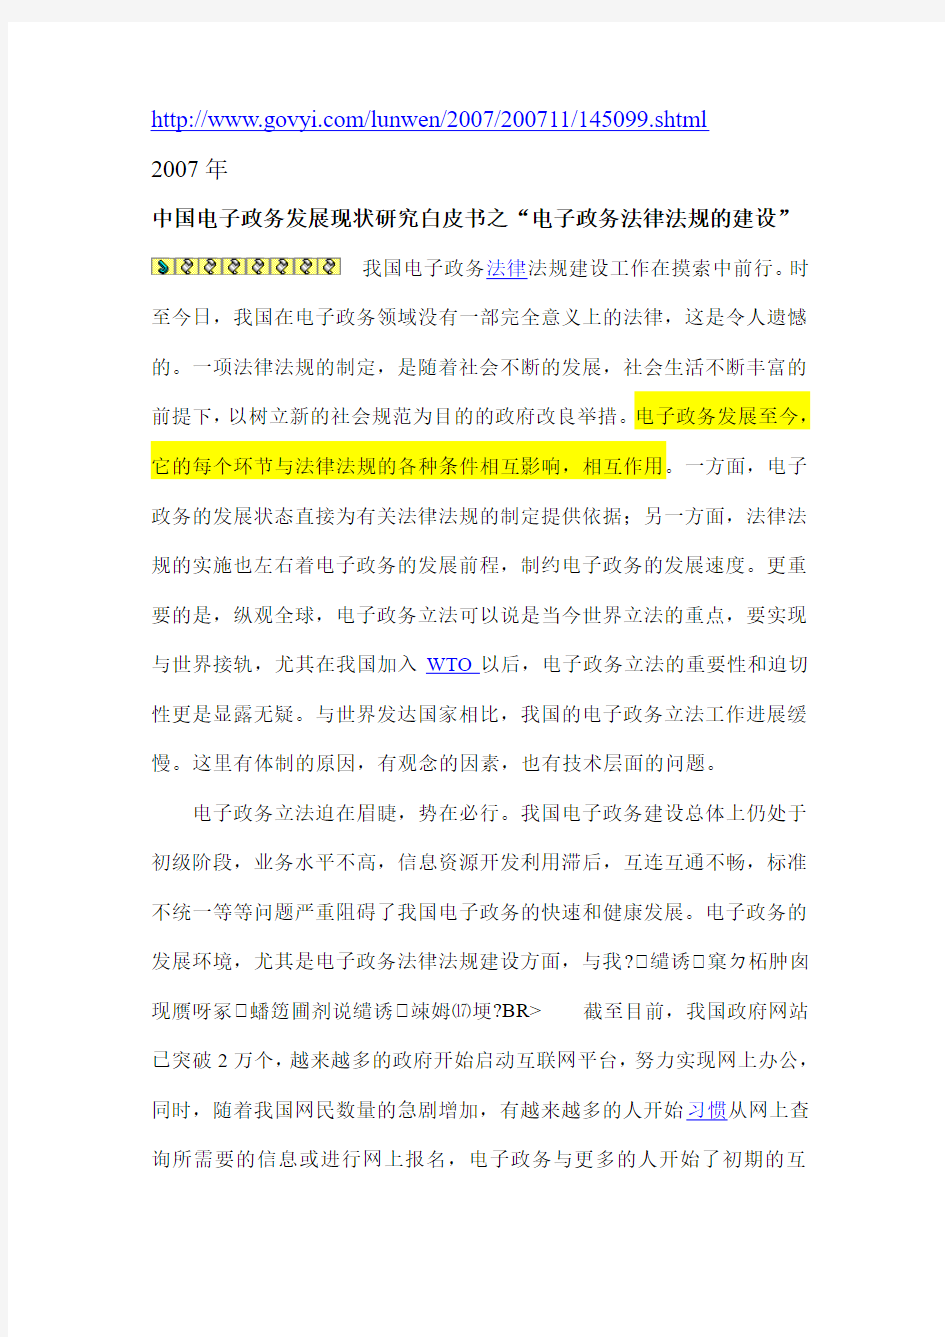 中国电子政务发展现状研究白皮书之“电子政务法律法规的建设”